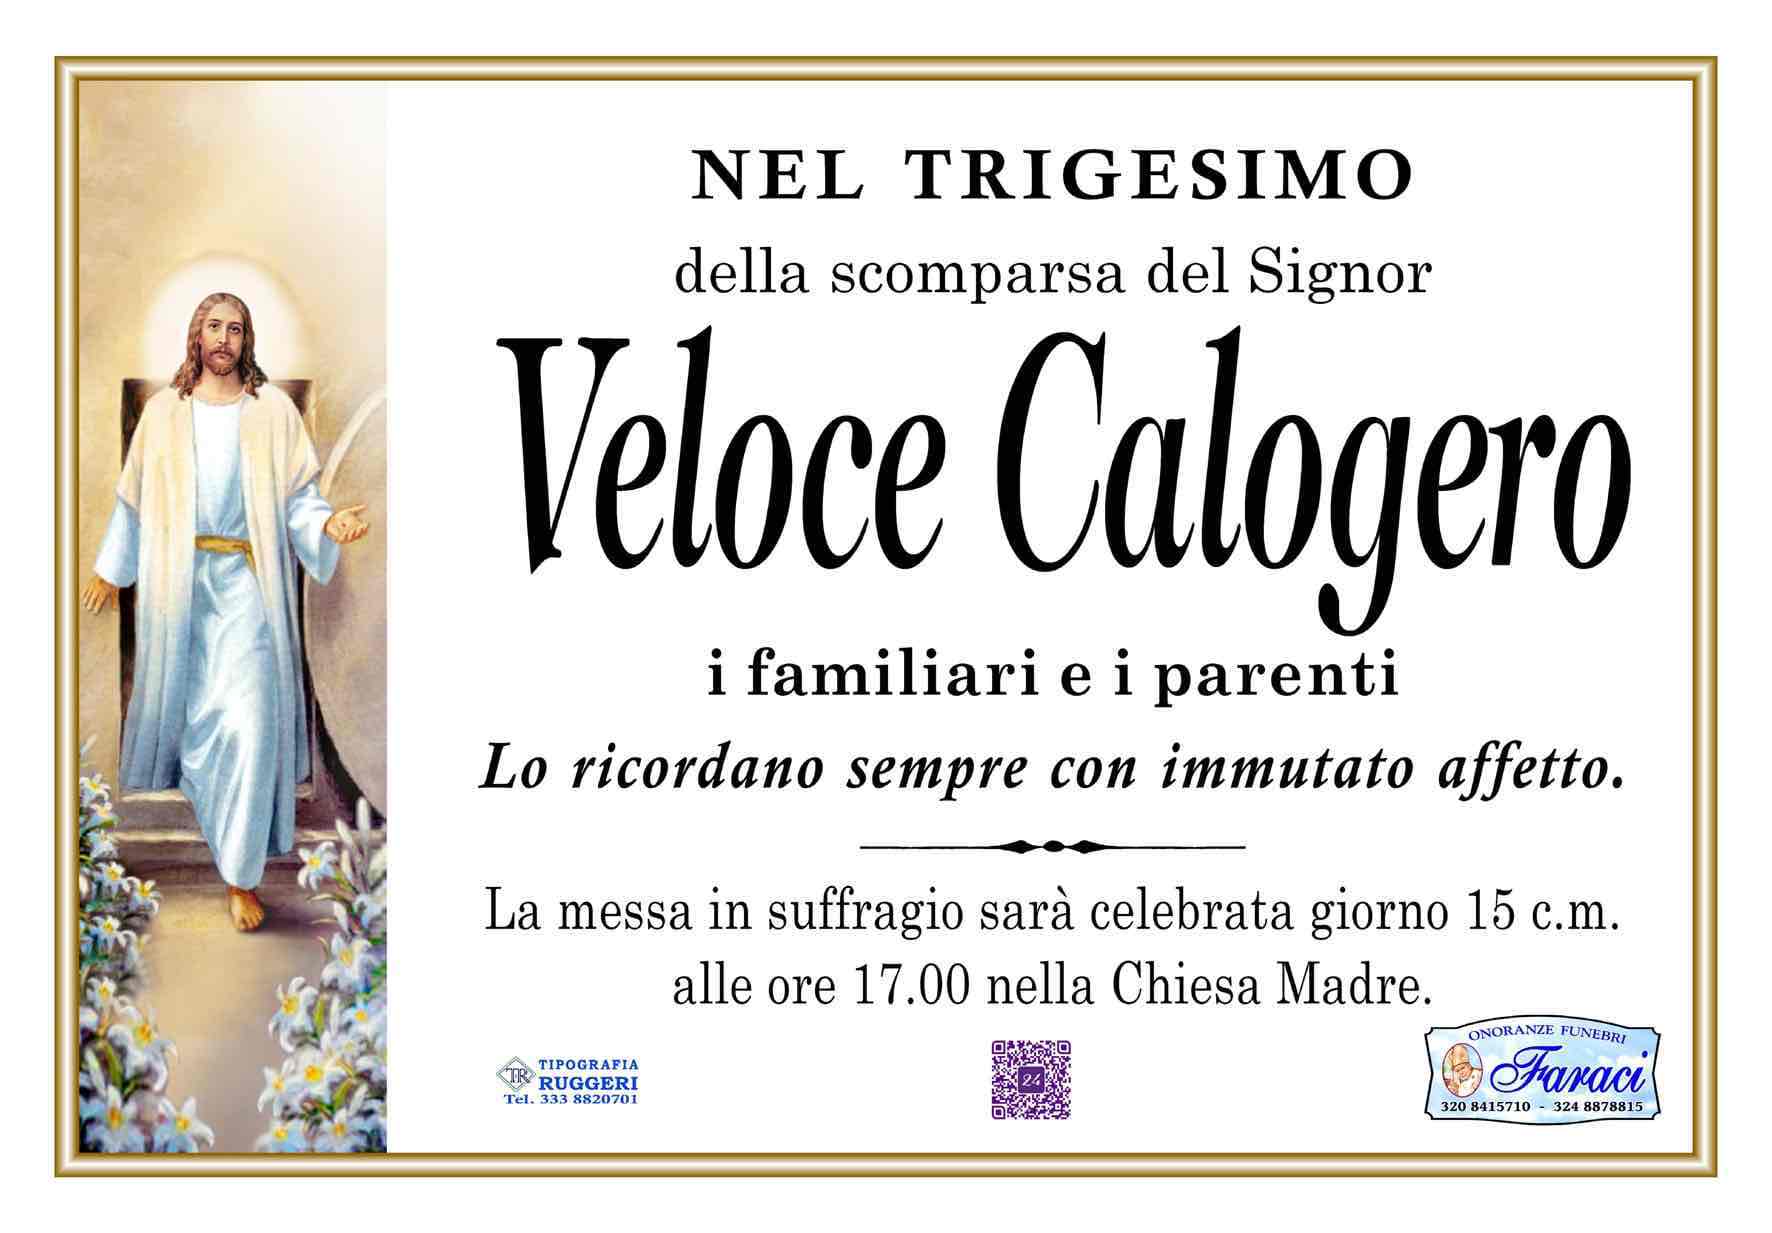 Calogero Veloce